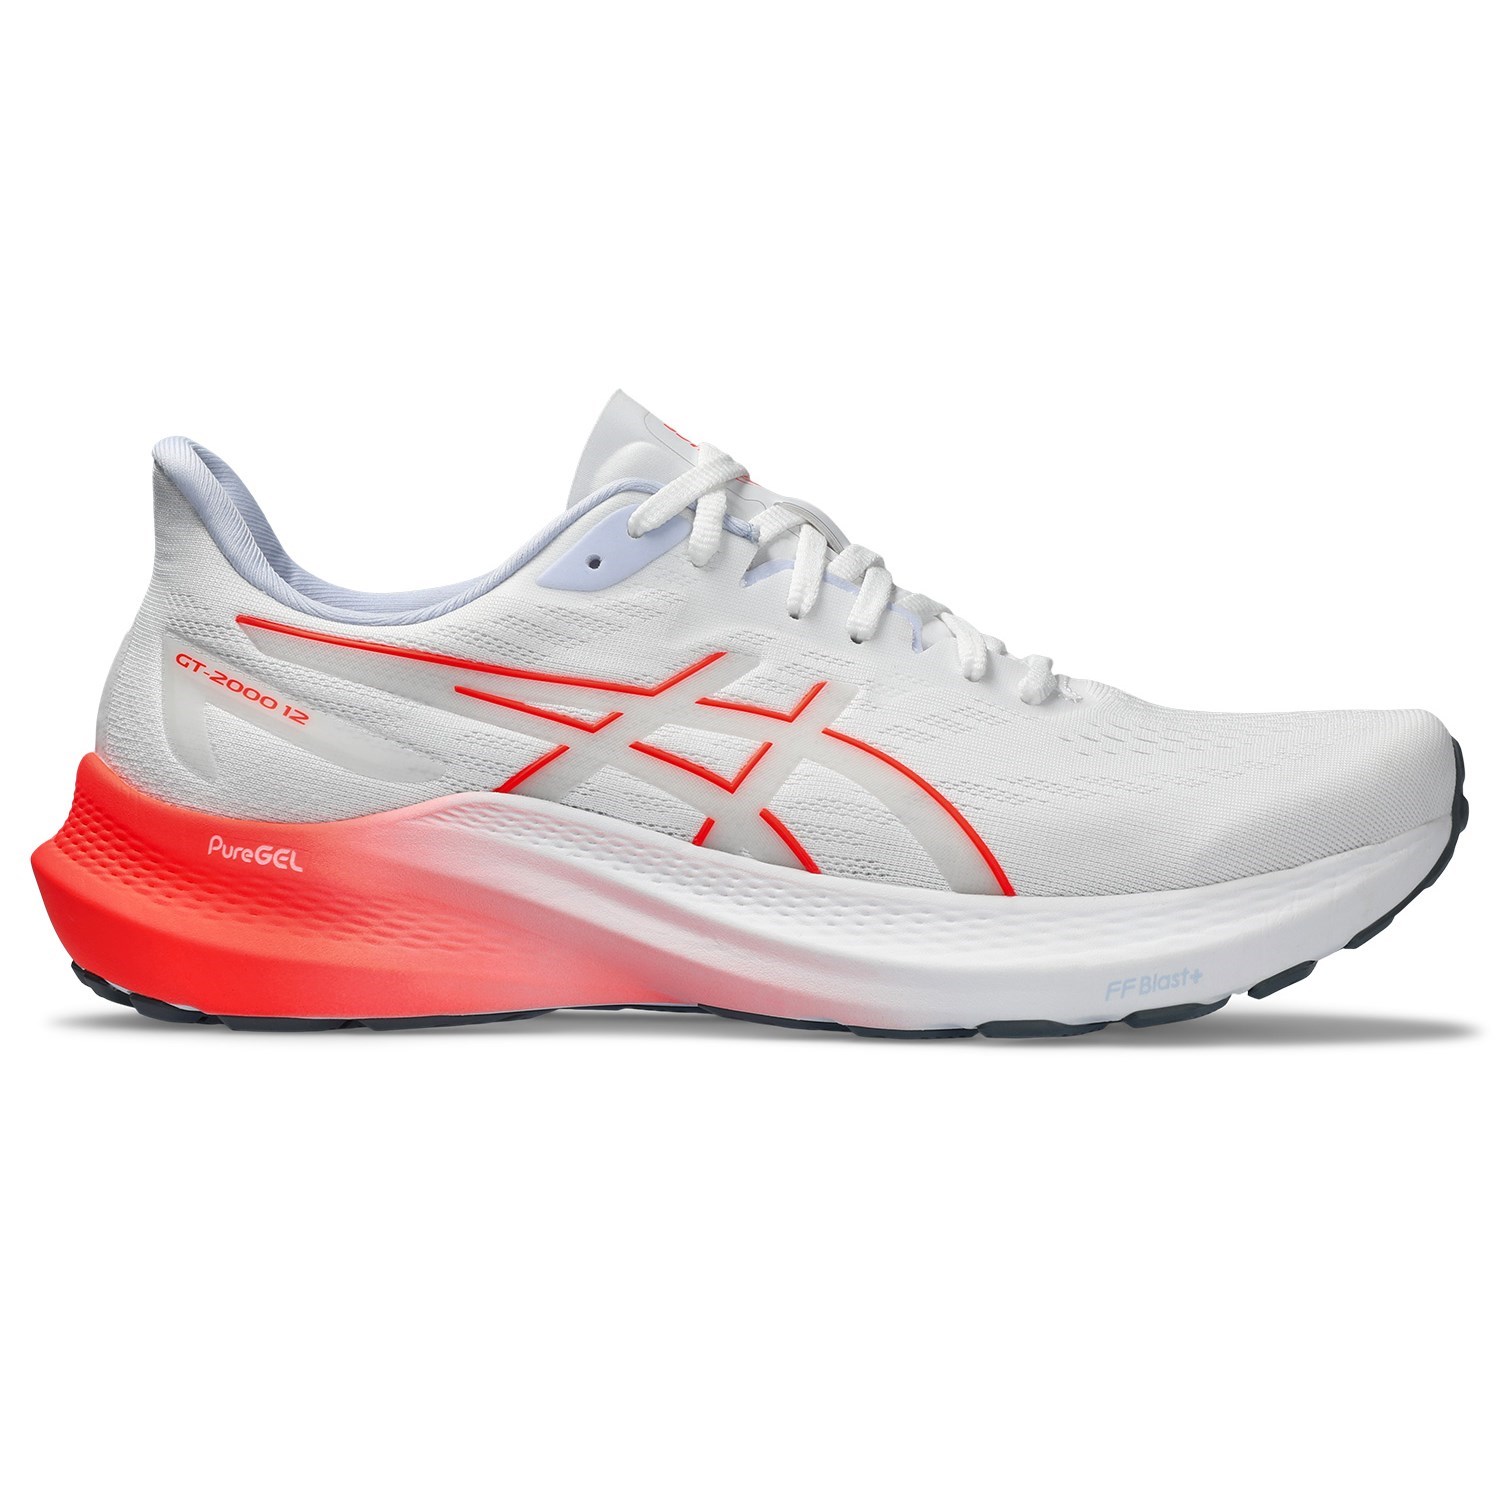 Asics GT-2000 12 - Mens Running Shoes - White/Sunrise Red | Sportitude